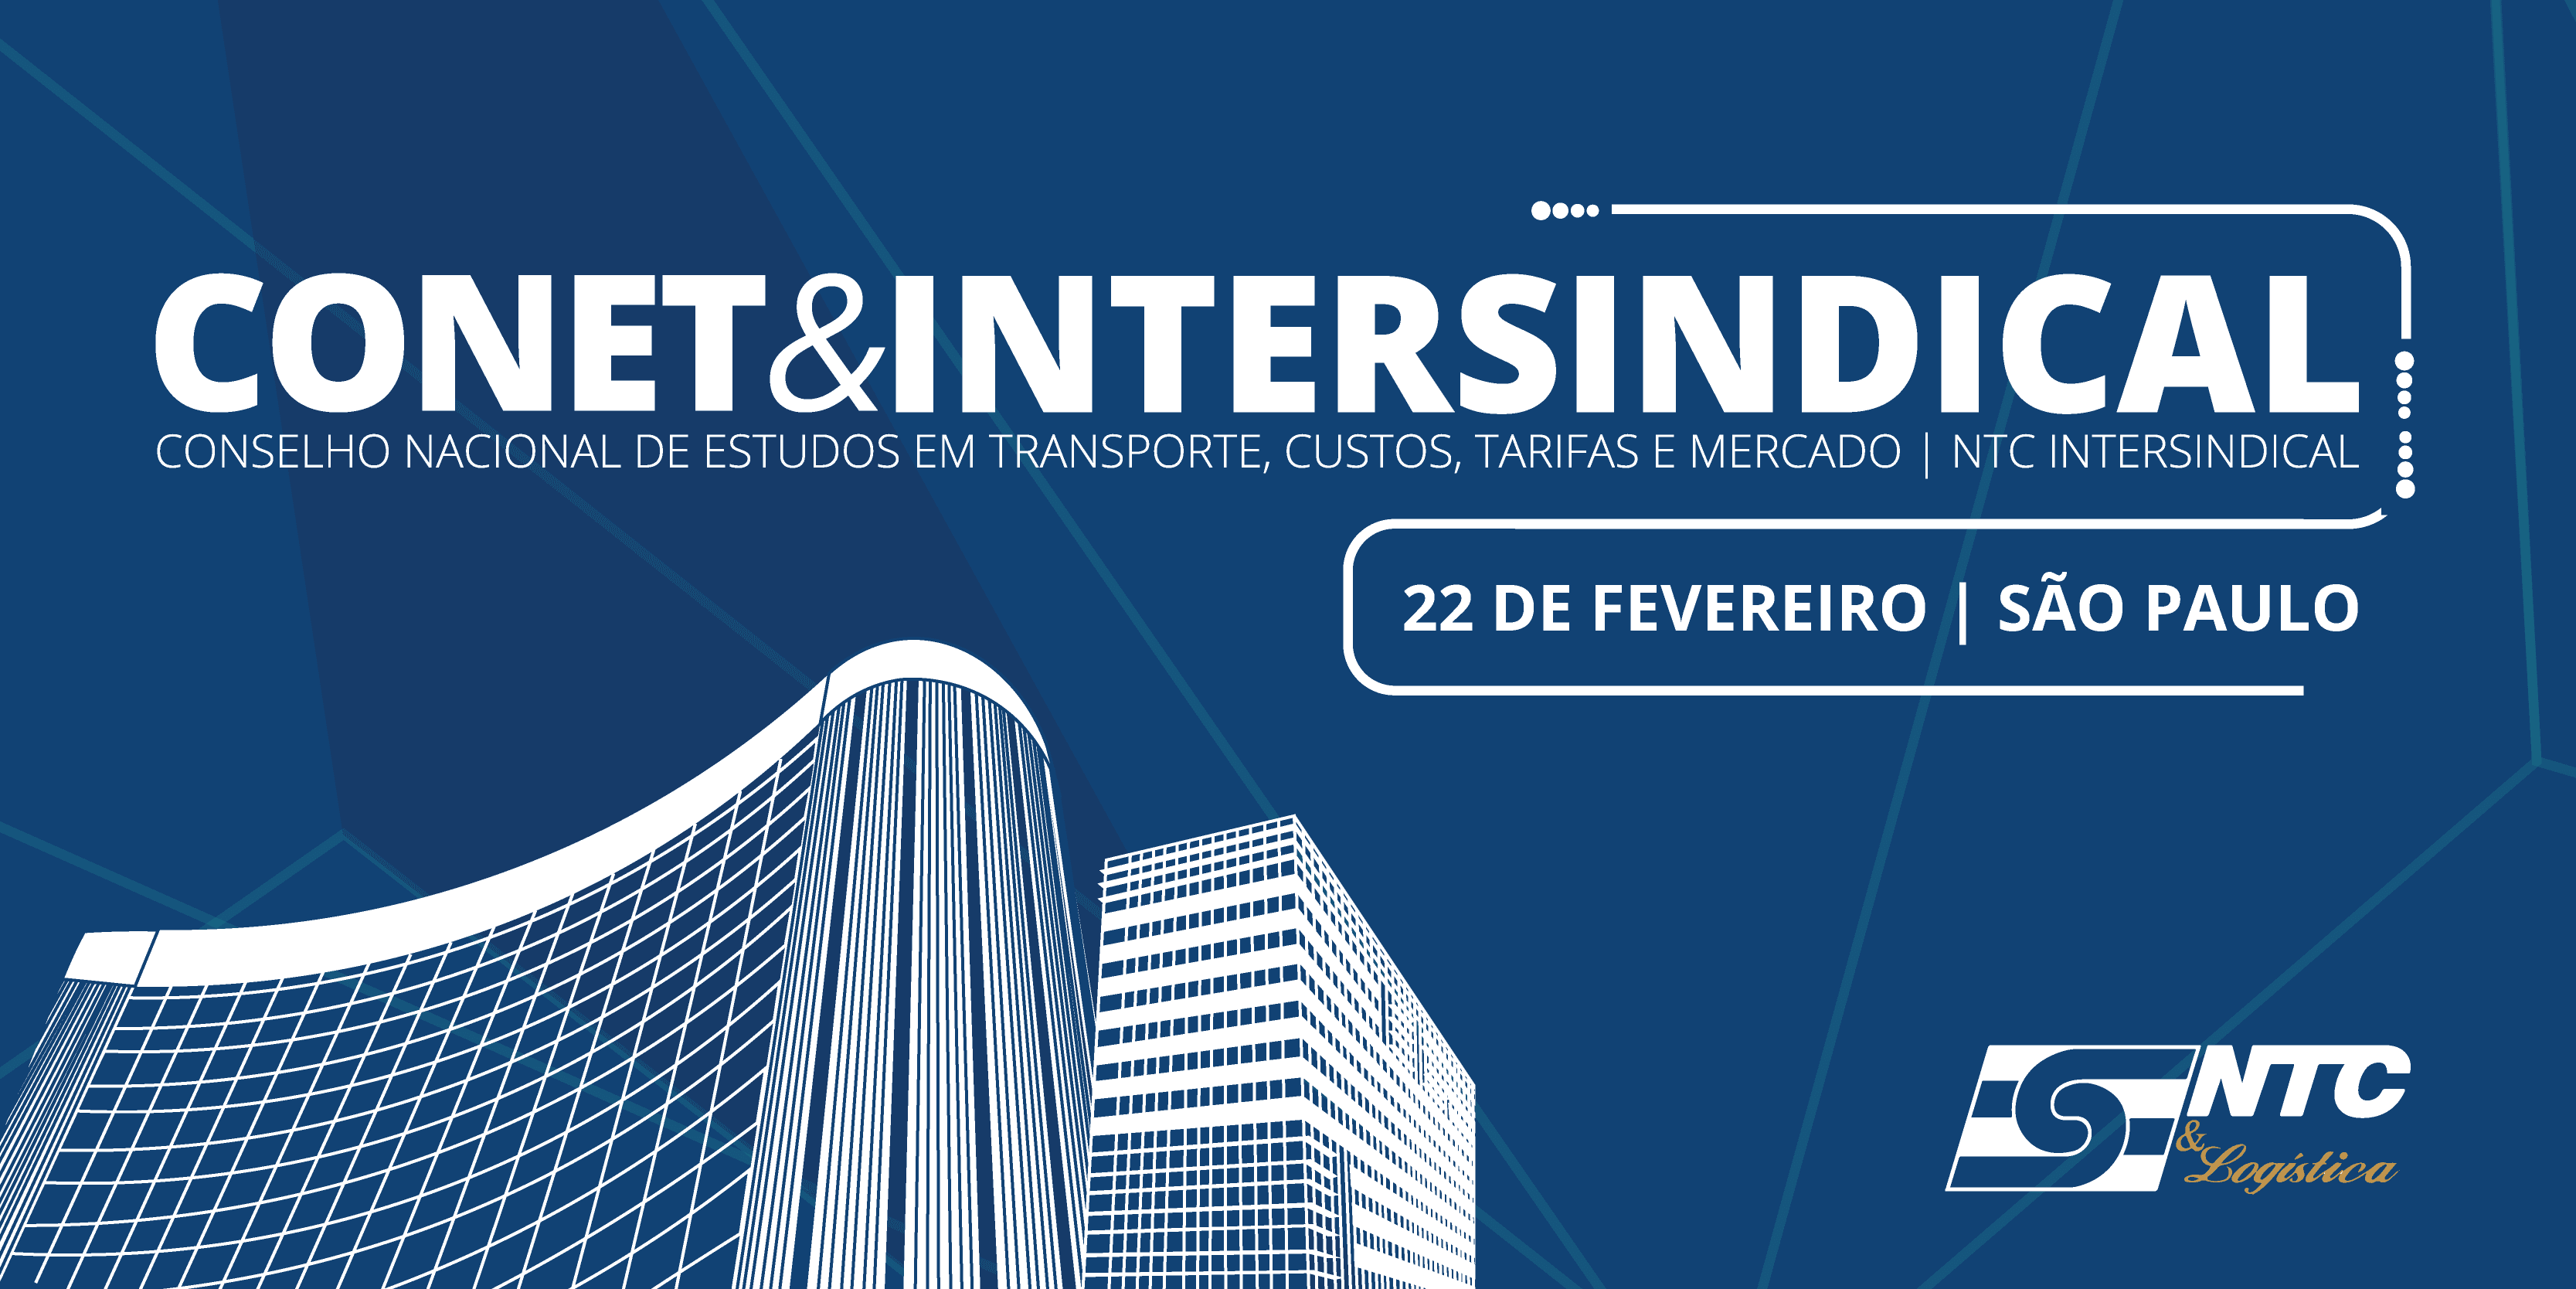 CONET&INTERSINDICAL - 22 DE FEVEREIRO - SÃO PAULO